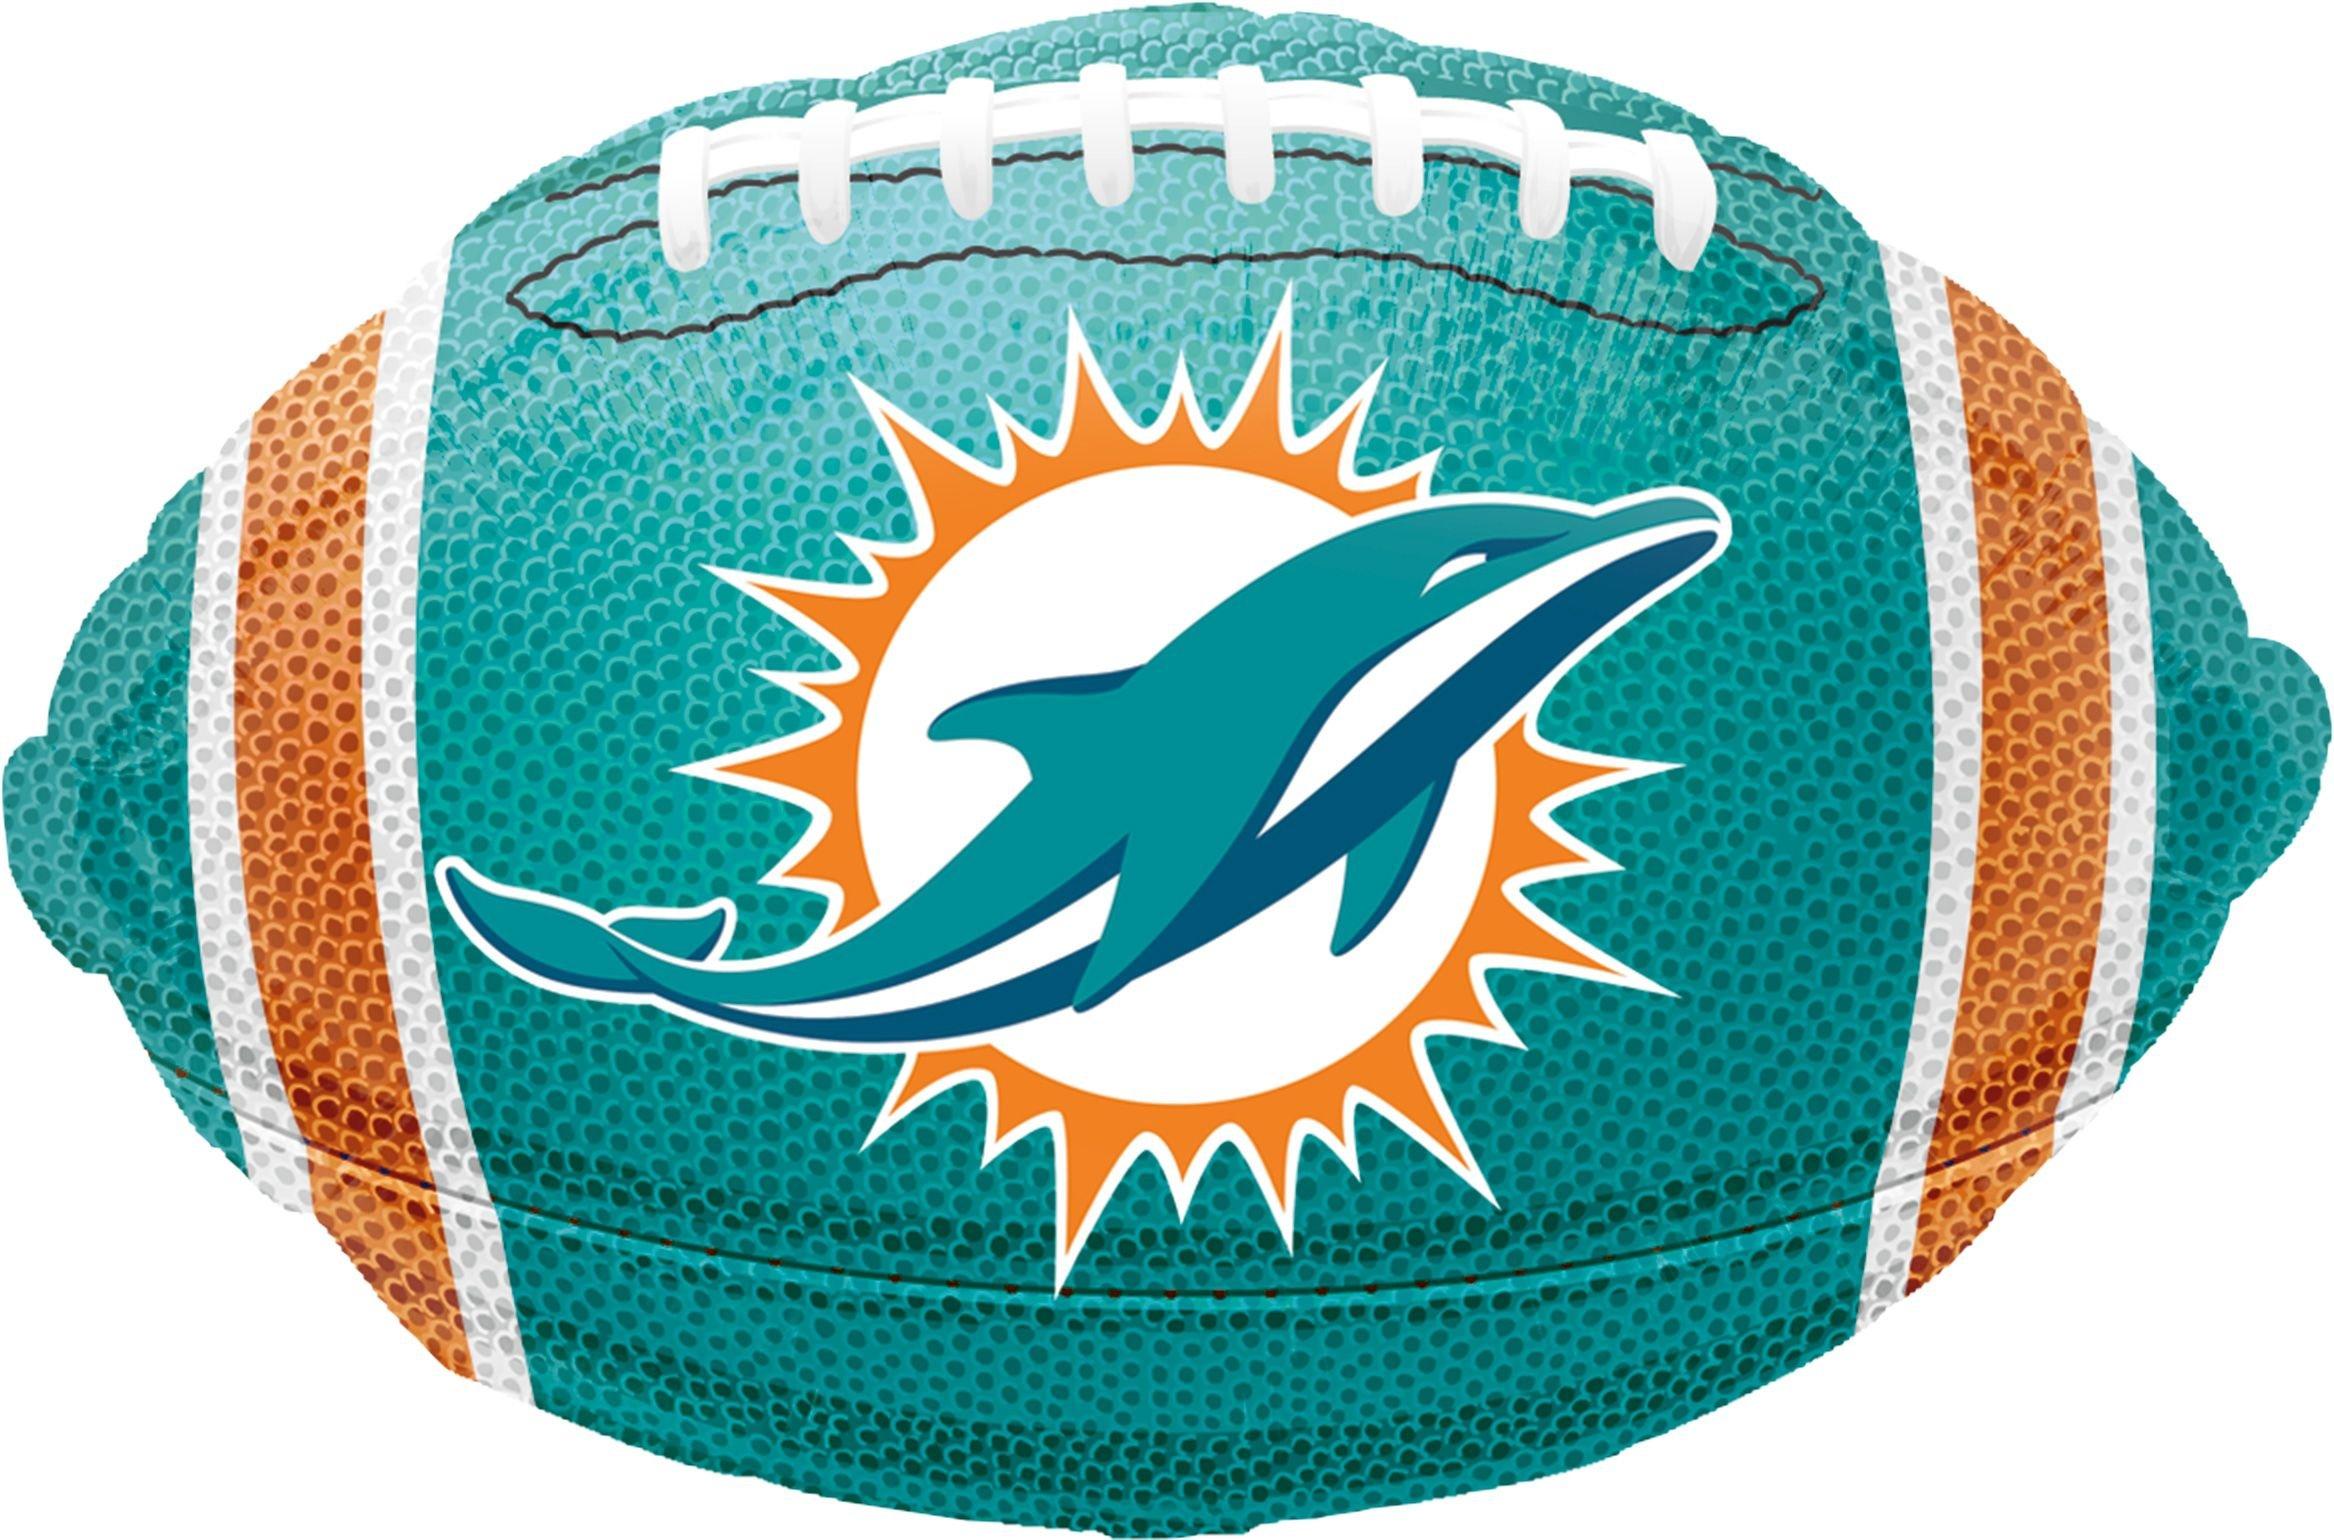 Miami Dolphins 18' Football Balloon